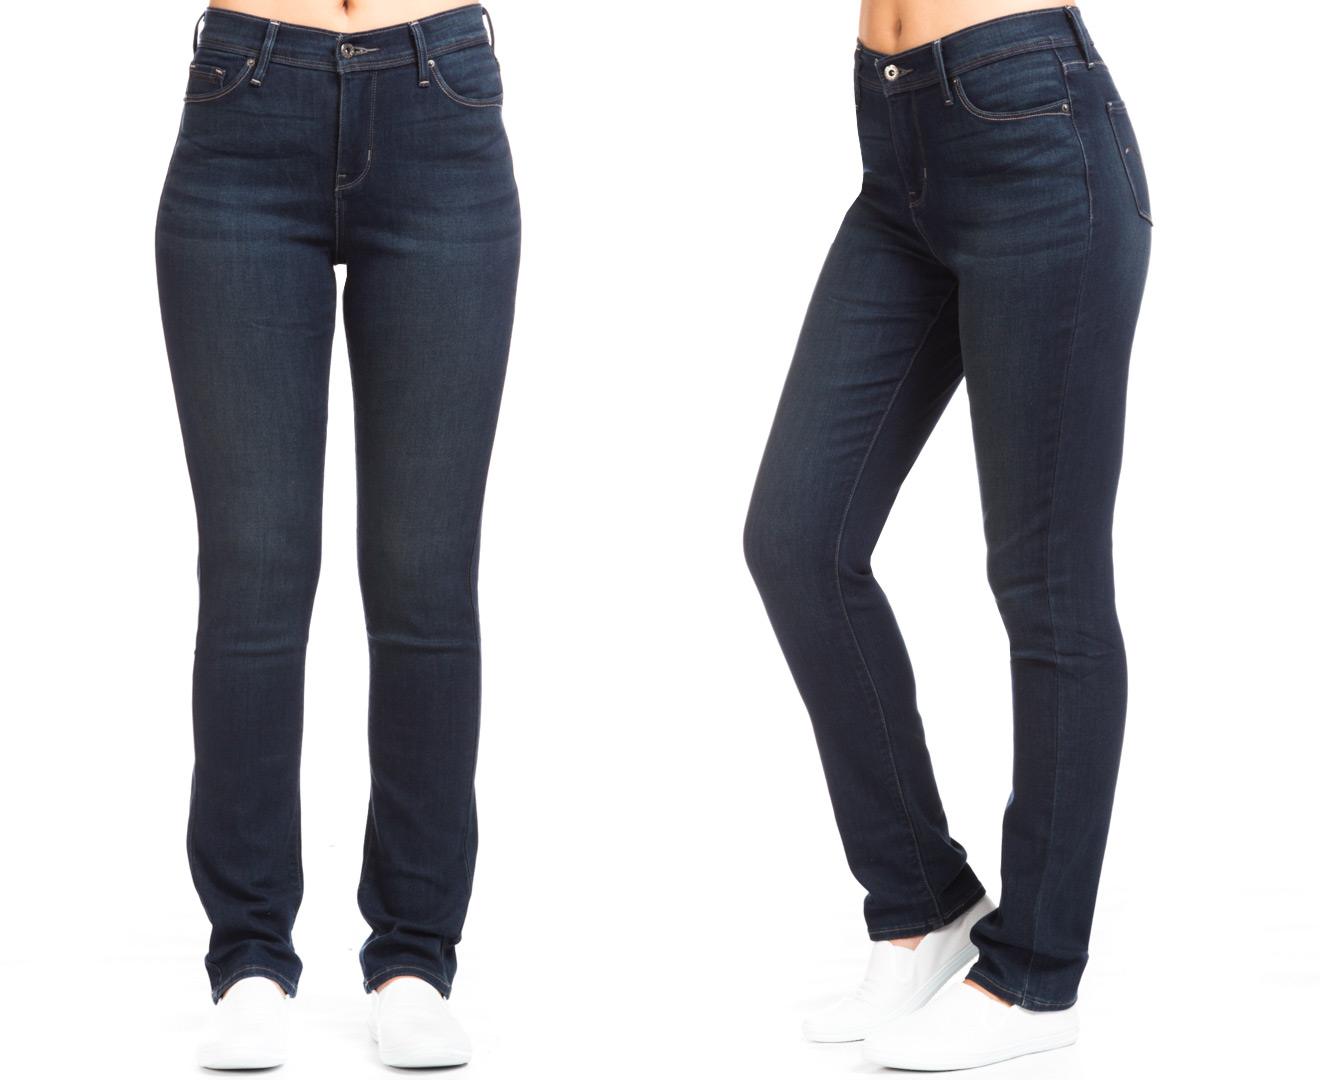 Levis Women's 512 Slimming Skinny Leg Jeans - Blue | Catch.com.au